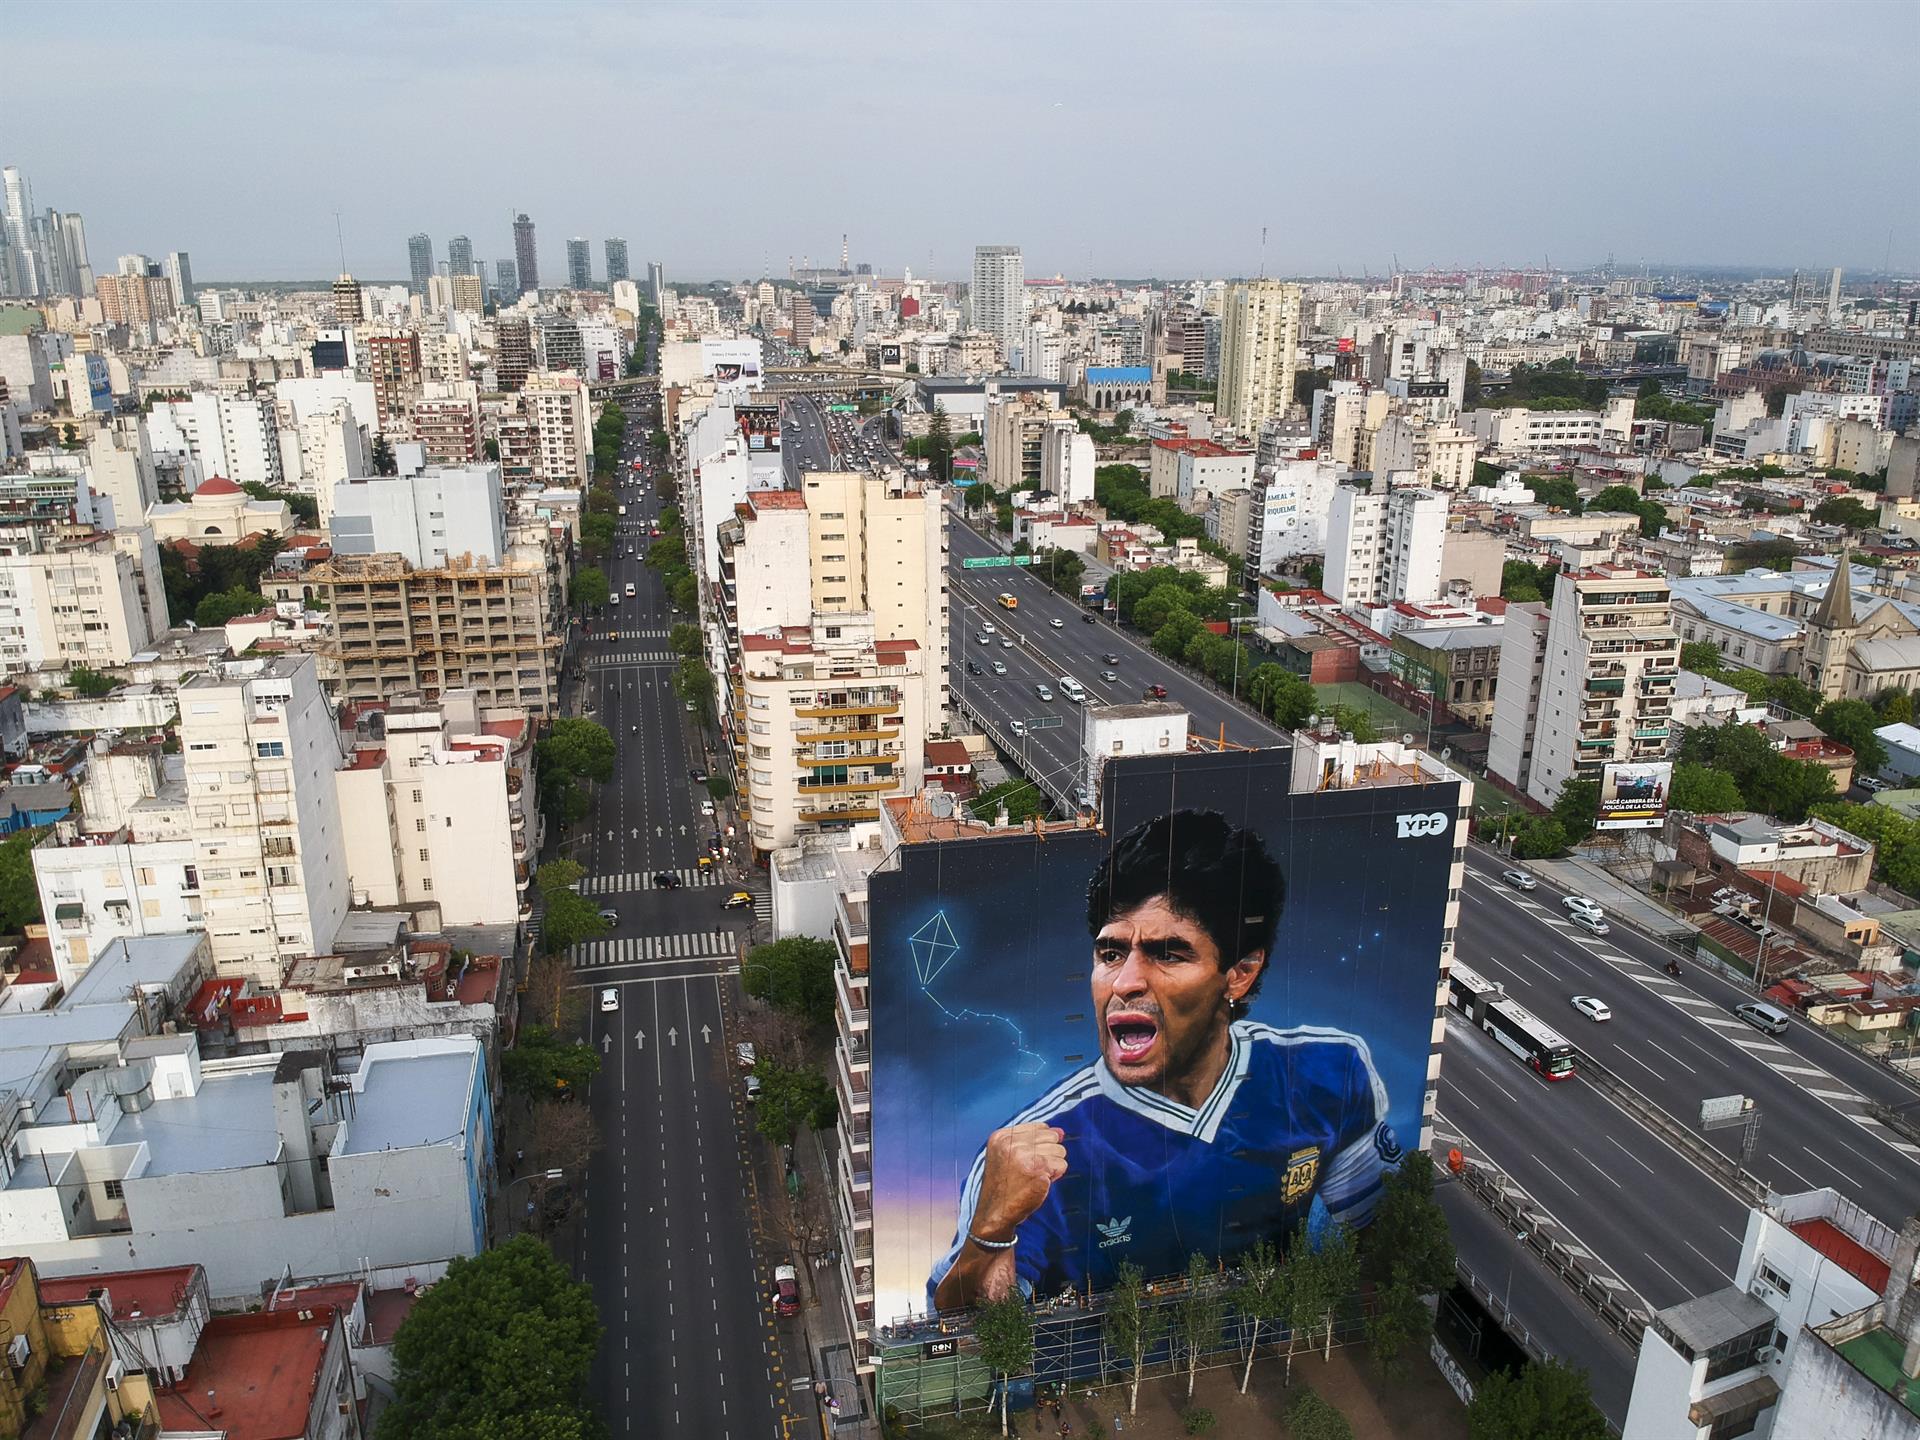 Vista del mural en honor a Diego Armando Maradona realizado por Martín Ron, el 28 de octubre de 2022 en Buenos Aires (Argentina). EFE/Juan Ignacio Roncoroni